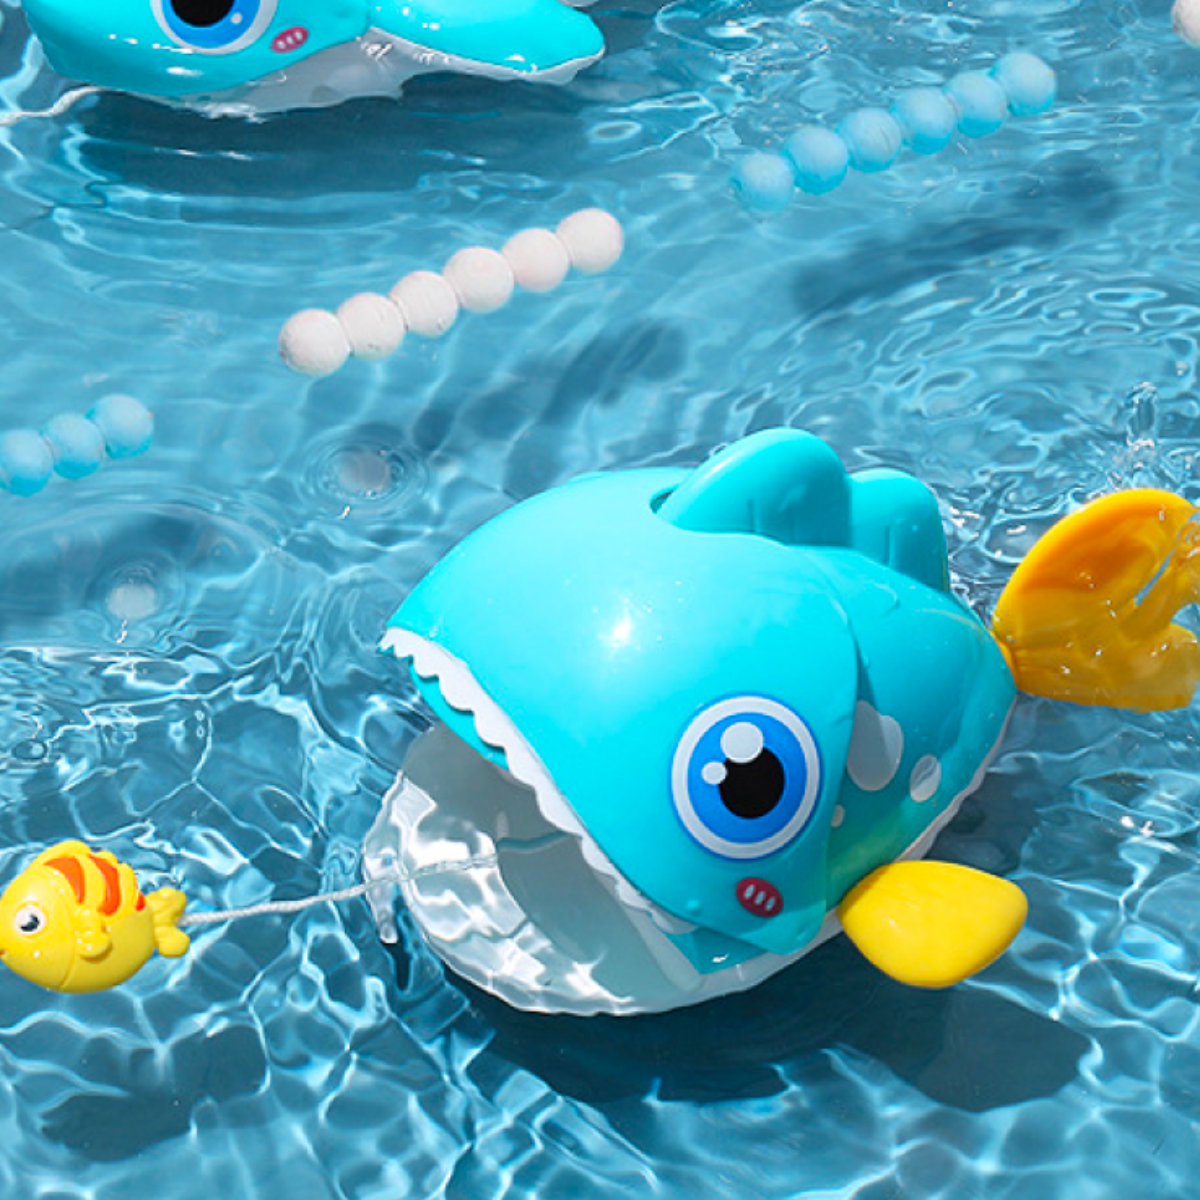 『人気おもちゃ』お風呂おもちゃBig fish eats small fish｜明るい色と特別な形は赤ちゃんの感覚を刺激し、子供の手と目の協調を発達させる